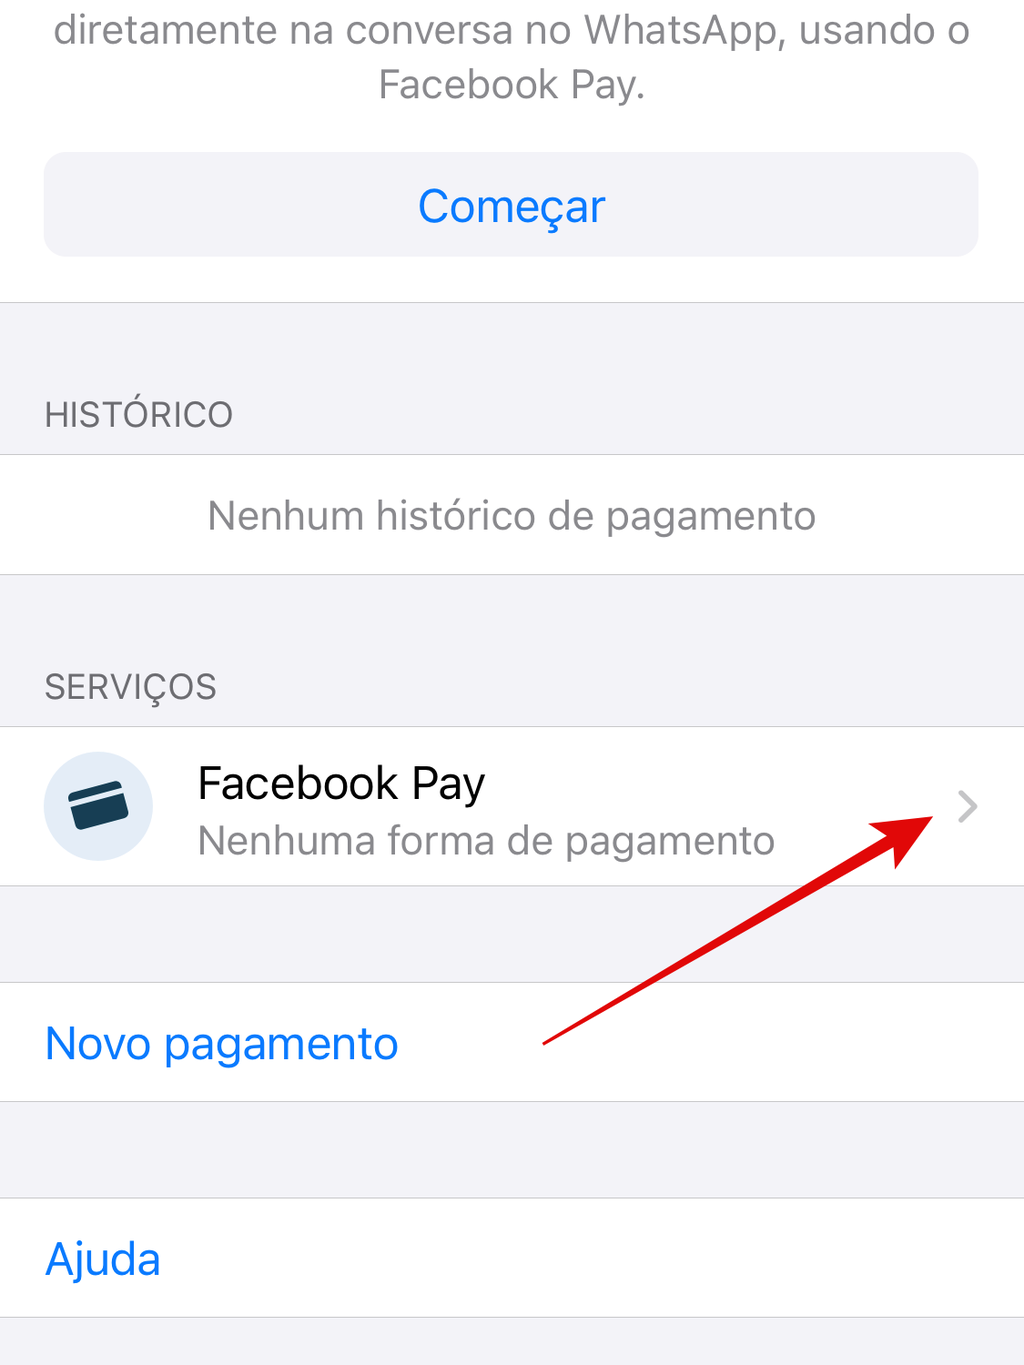 Vá em Facebook Pay para adicionar uma nova forma de pagamento (Imagem: Guadalupe Carniel/Captura de tela)